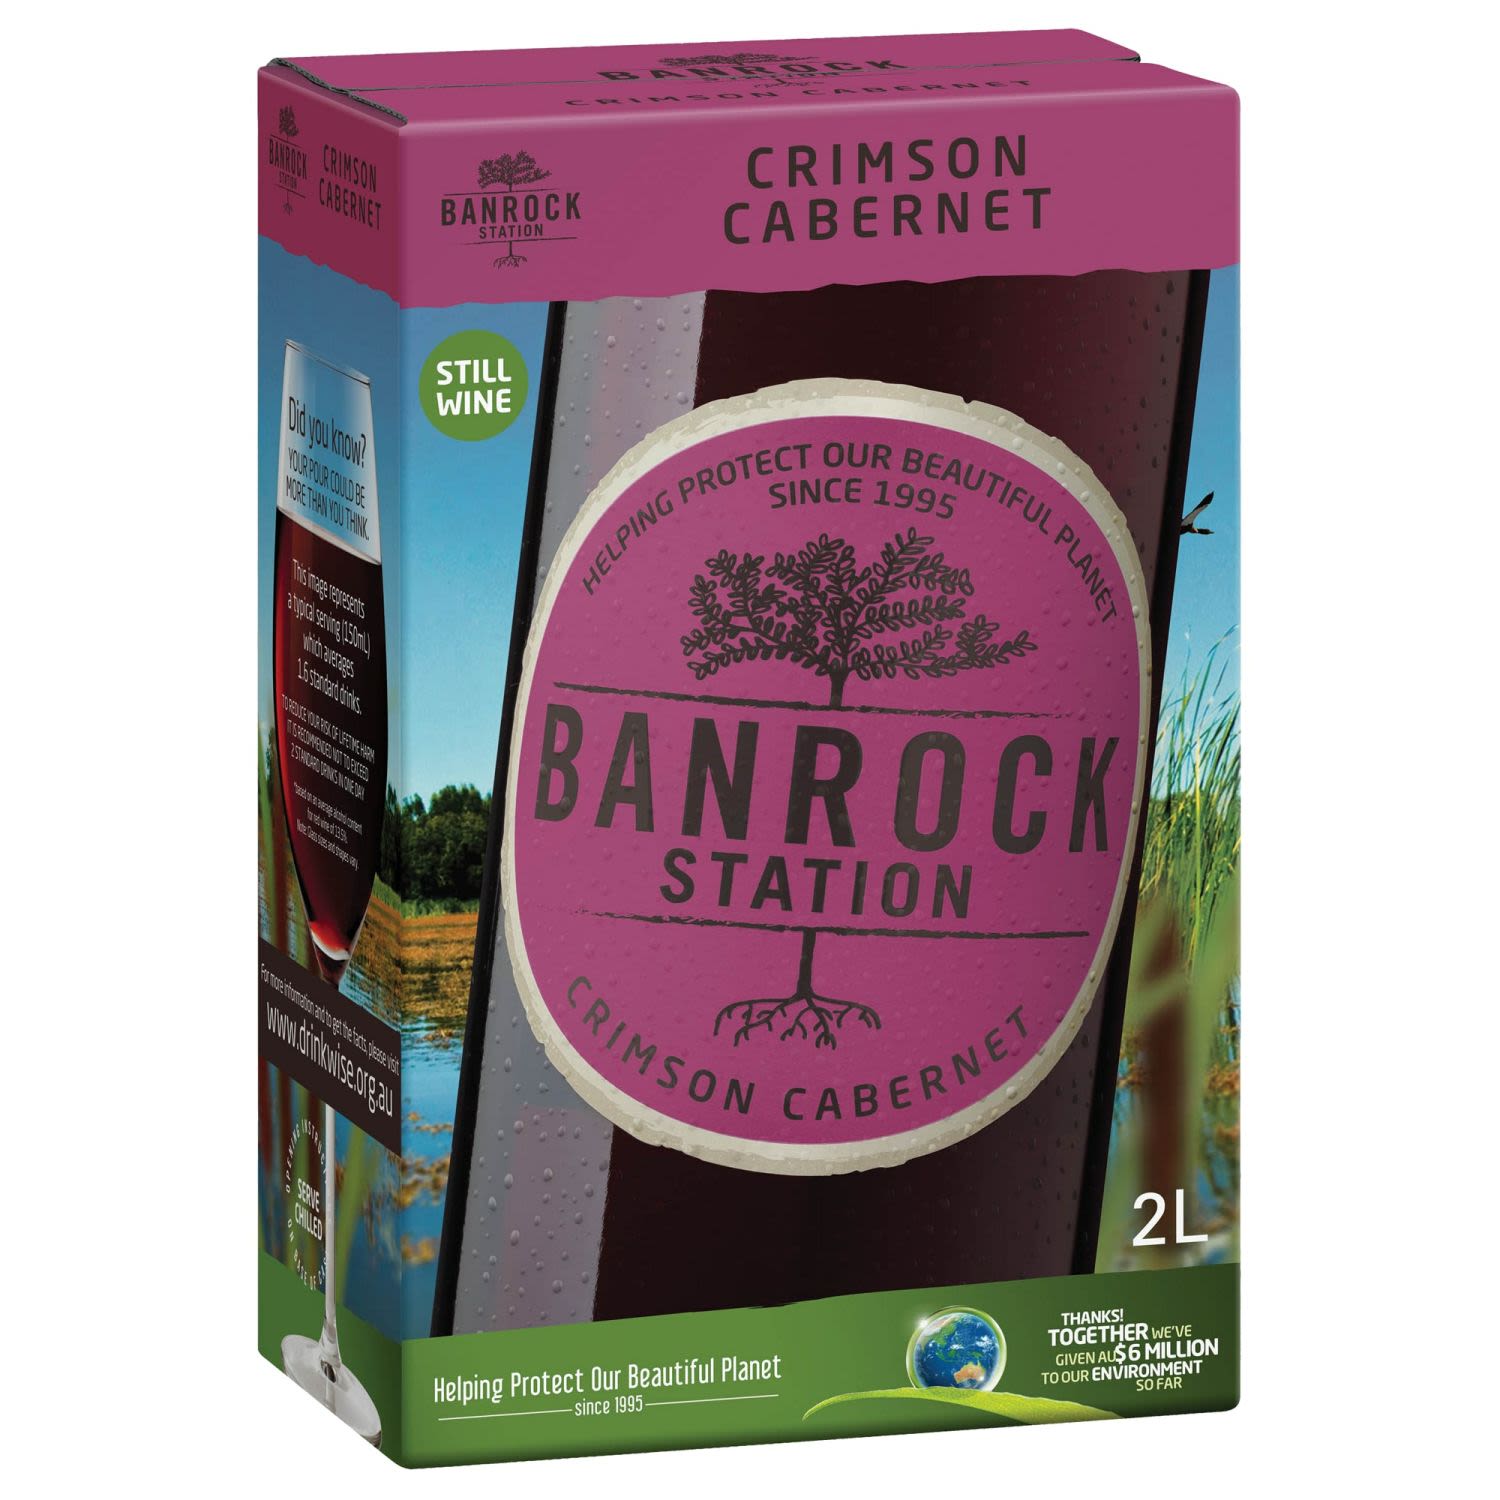 Banrock Station Crimson Cabernet 2L Cask